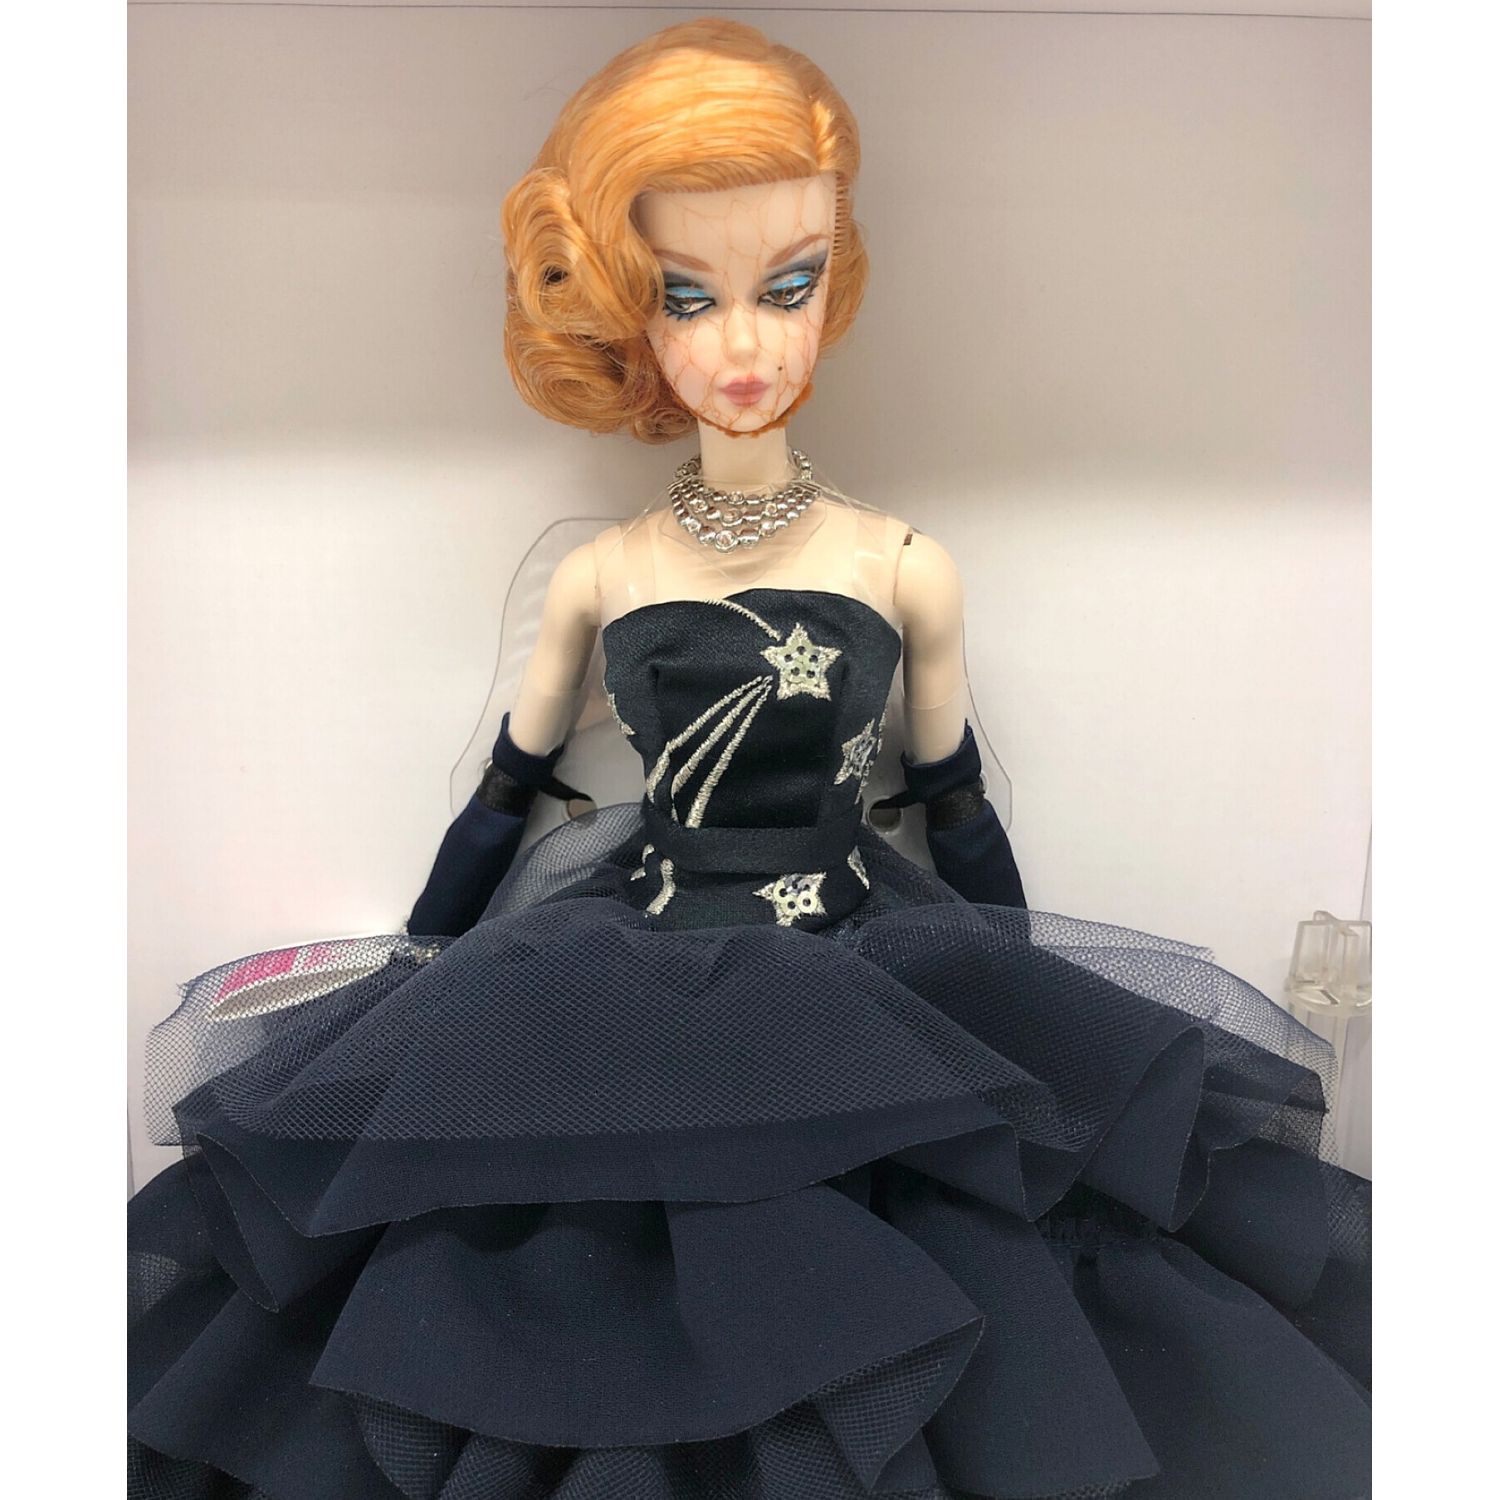 バービー人形 ファッションモデルコレクション ミッドナイトグラマー